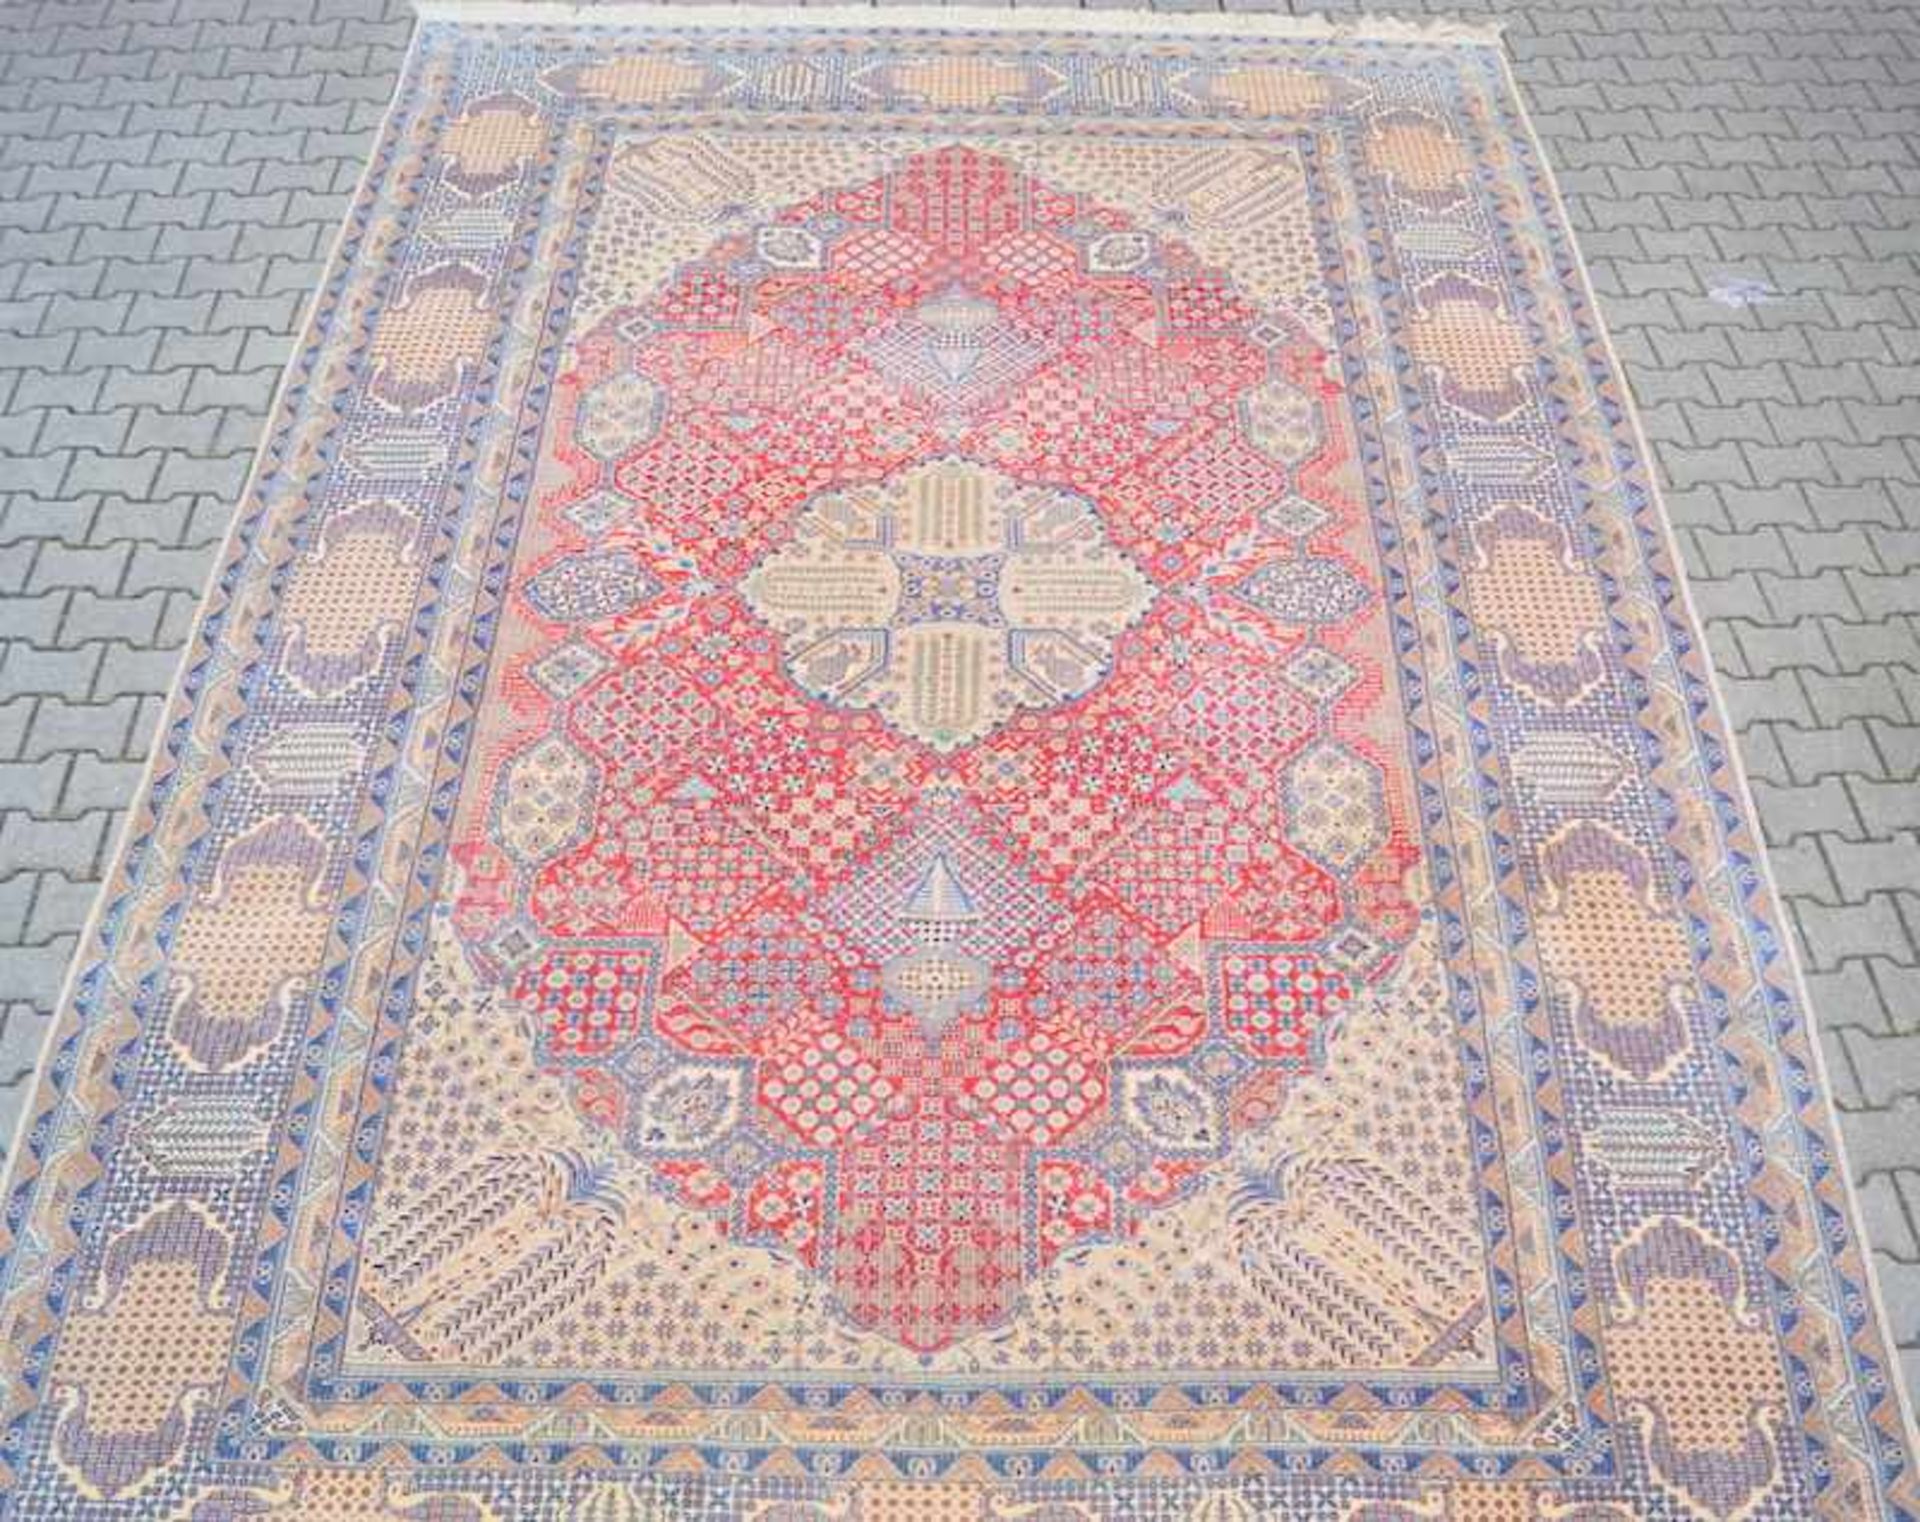 Großer persischer NainWolle auf Baumwolle, Anilinfarben, sehr gepflegt, rotes Mittelfeld und blaue